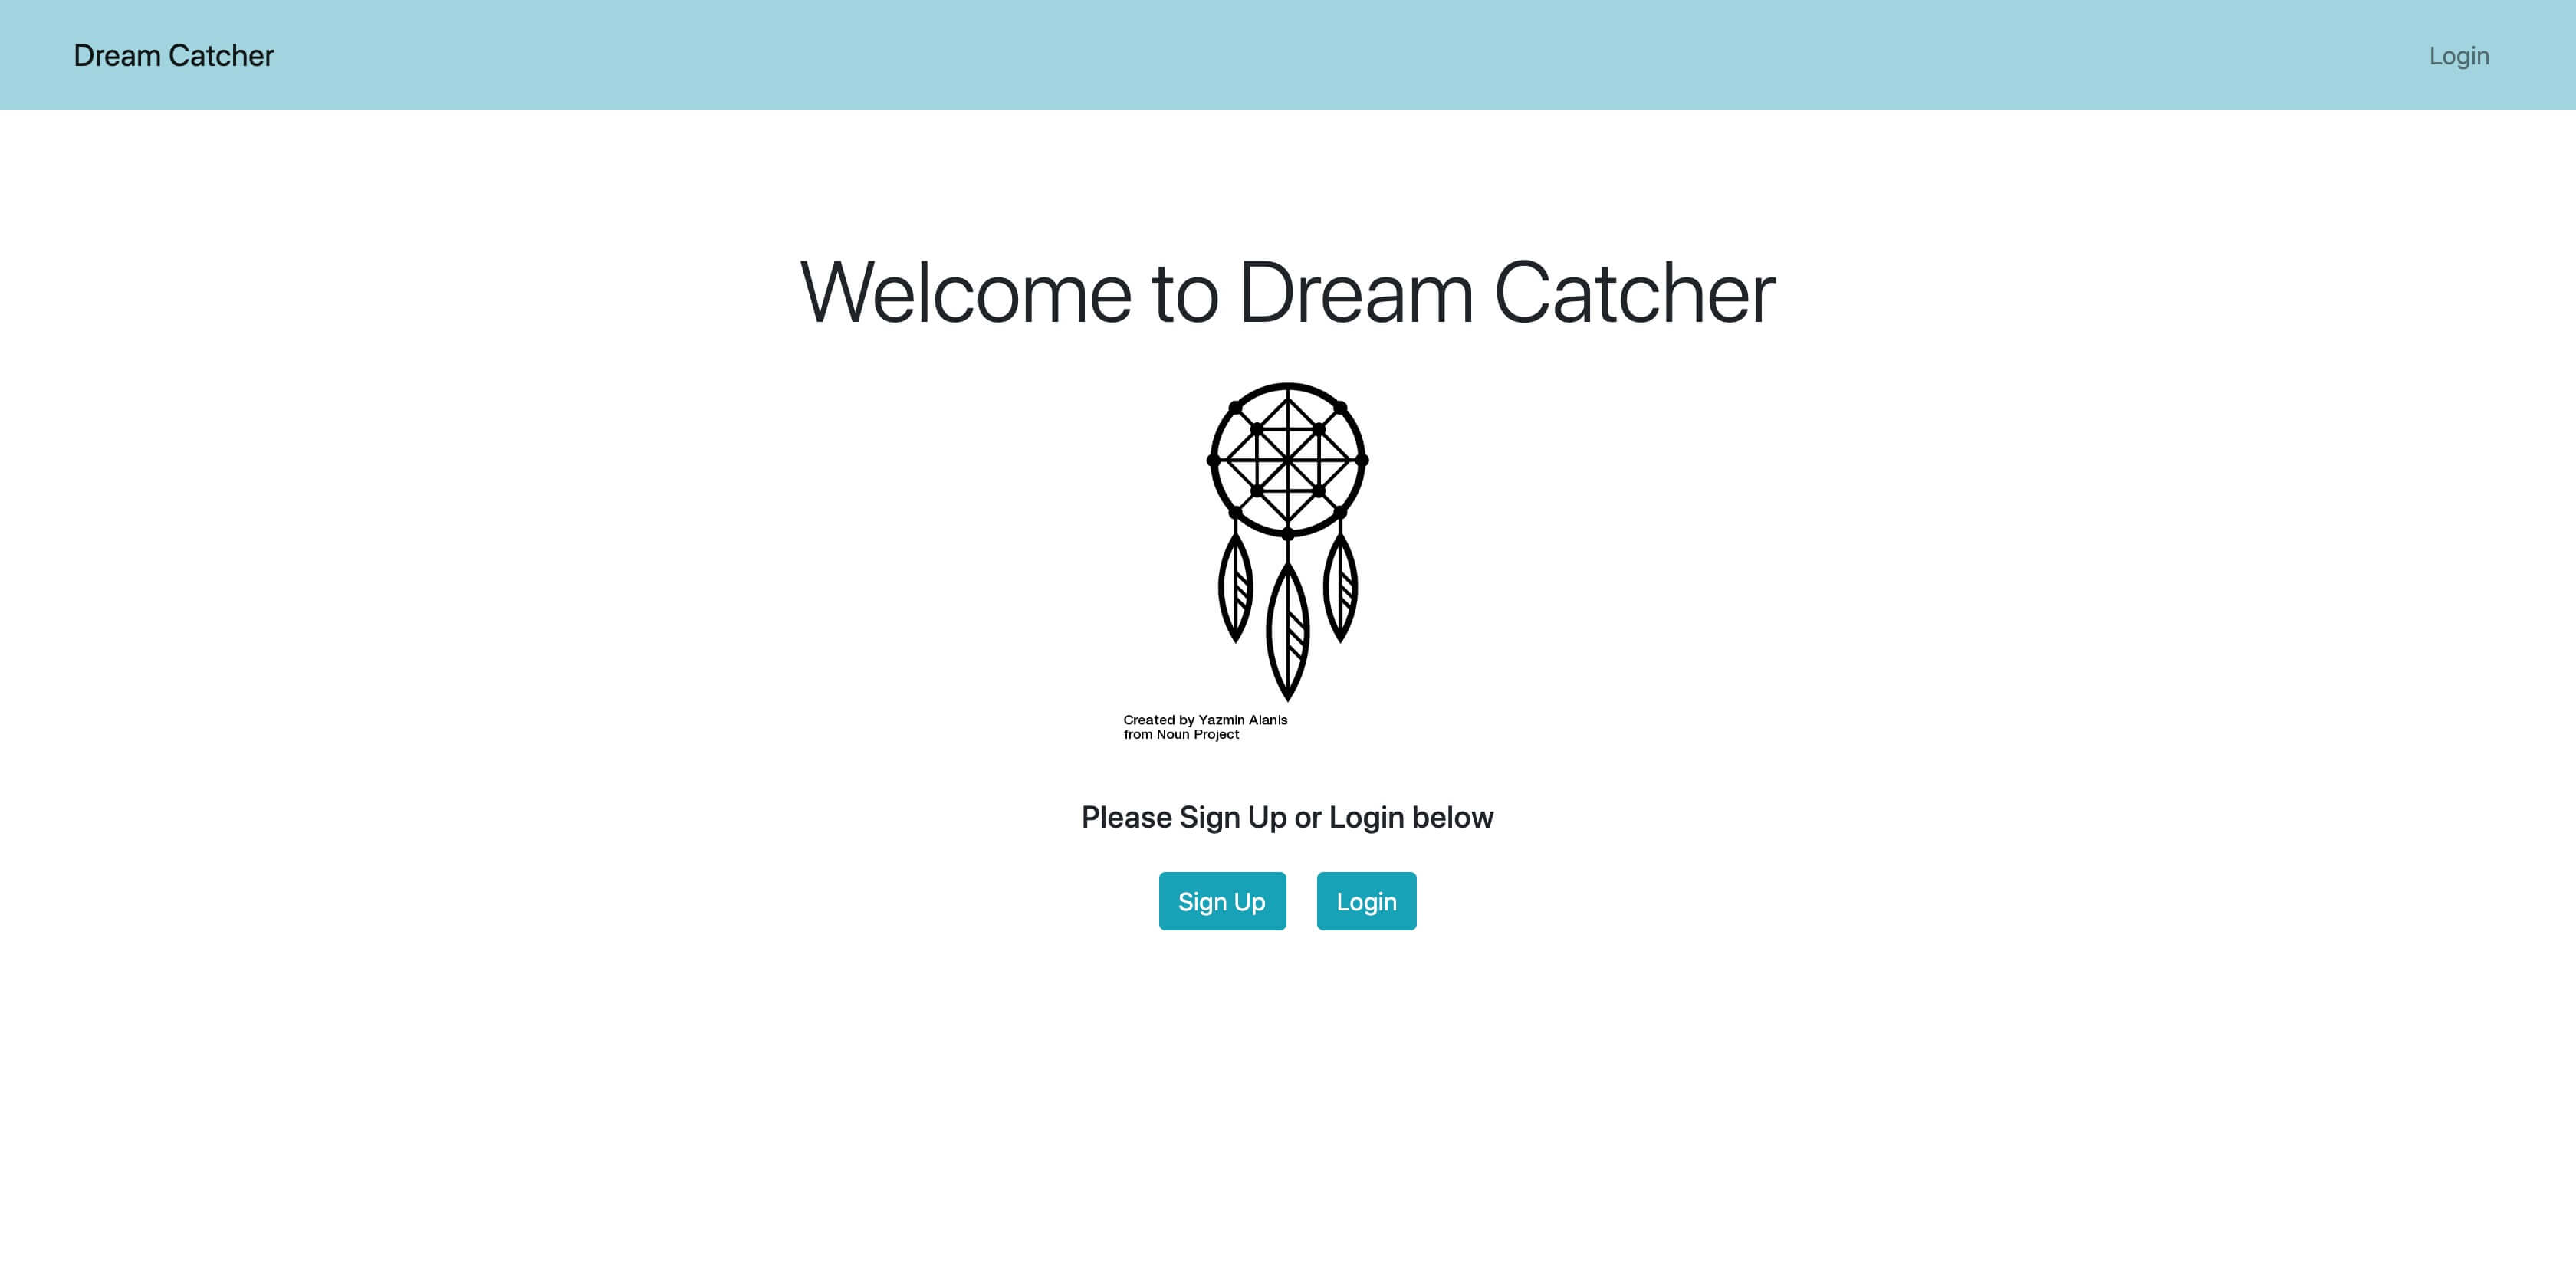 Dream Catcher signup